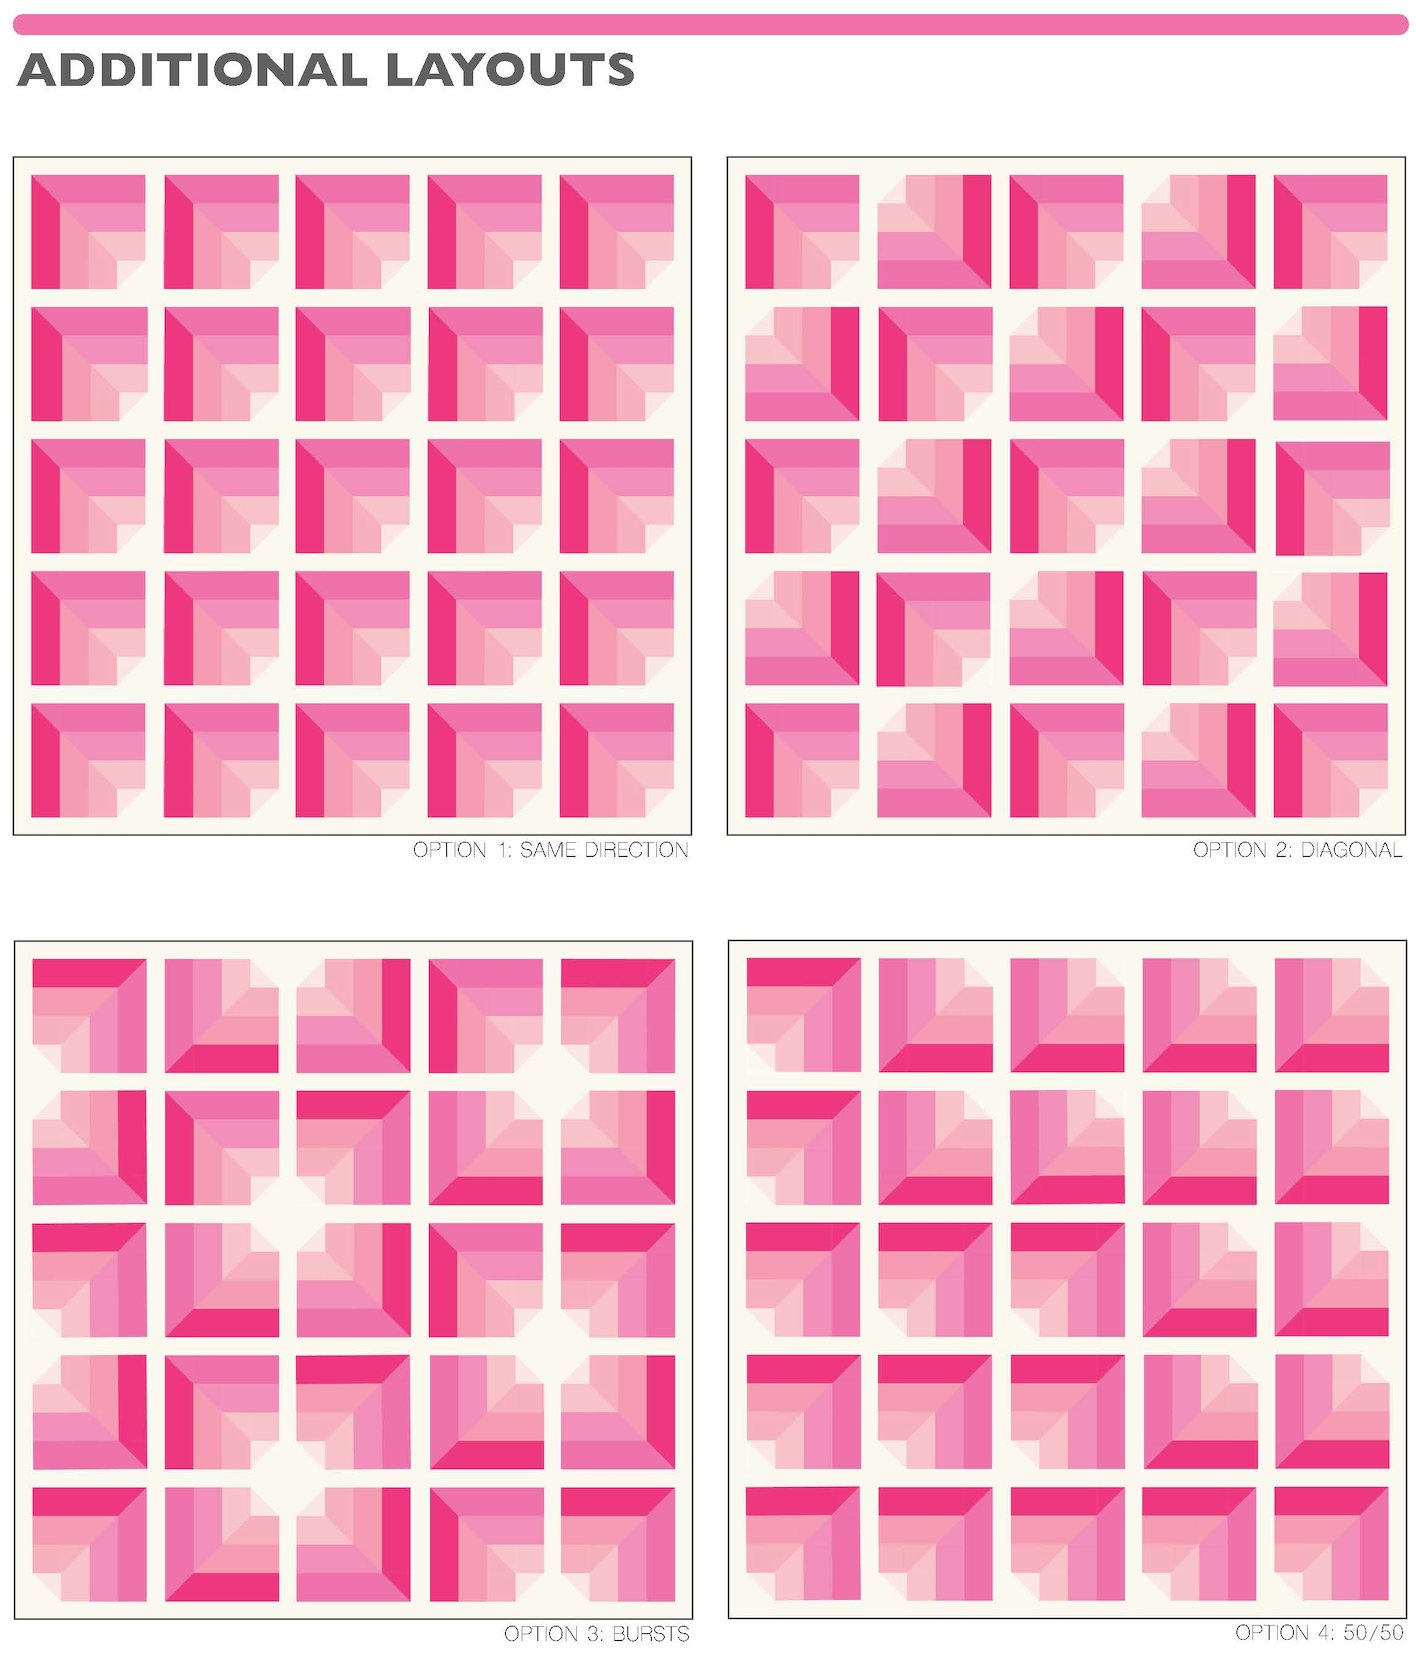 Noli Quilt Pattern - PDF